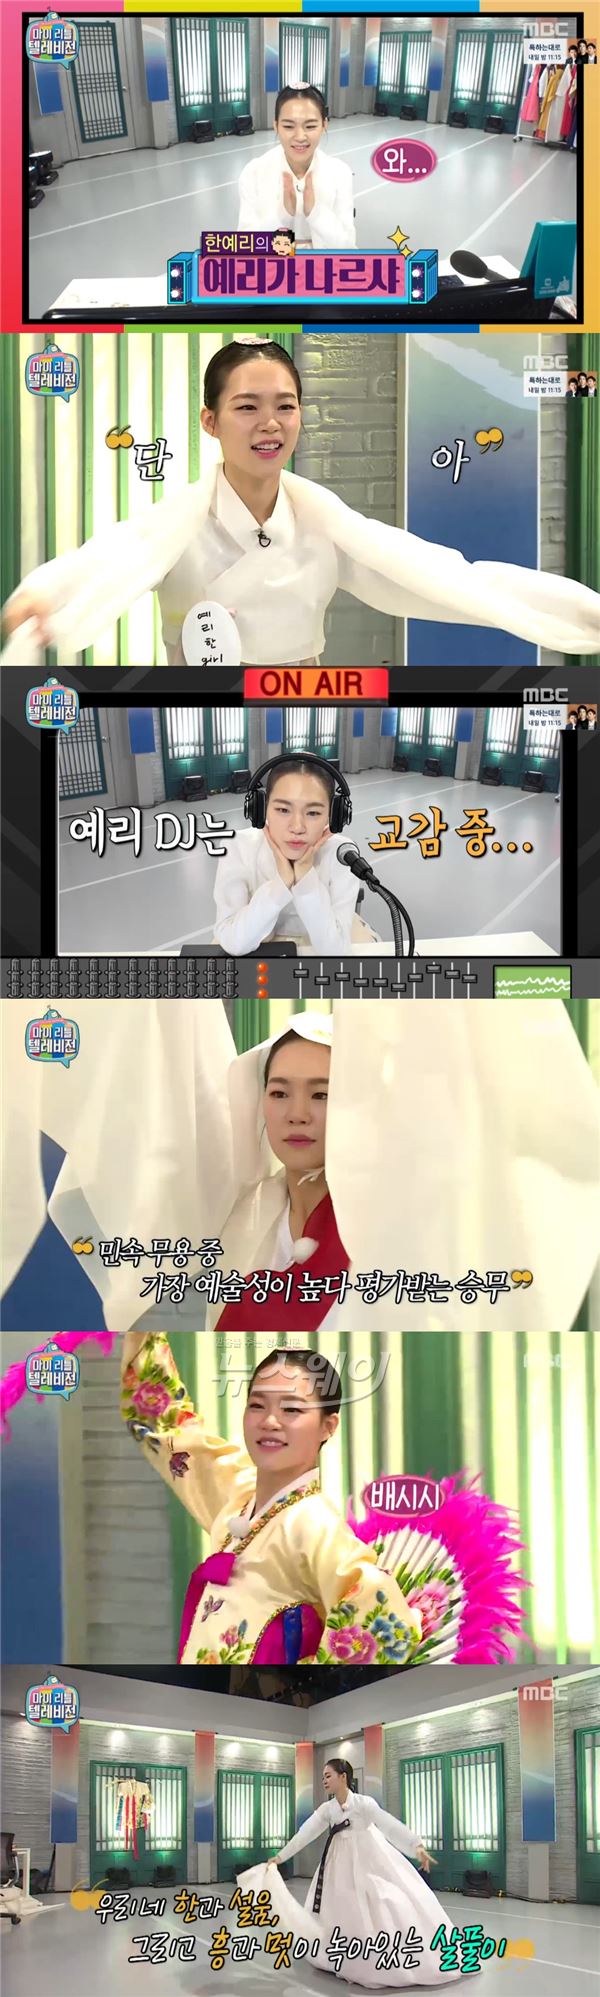 한예리가 MBC ‘마이 리틀 텔레비전’에 출연해 청초한 미모로 안방극장을 사로잡았다/ 사진= '마리텔' 영상캡처